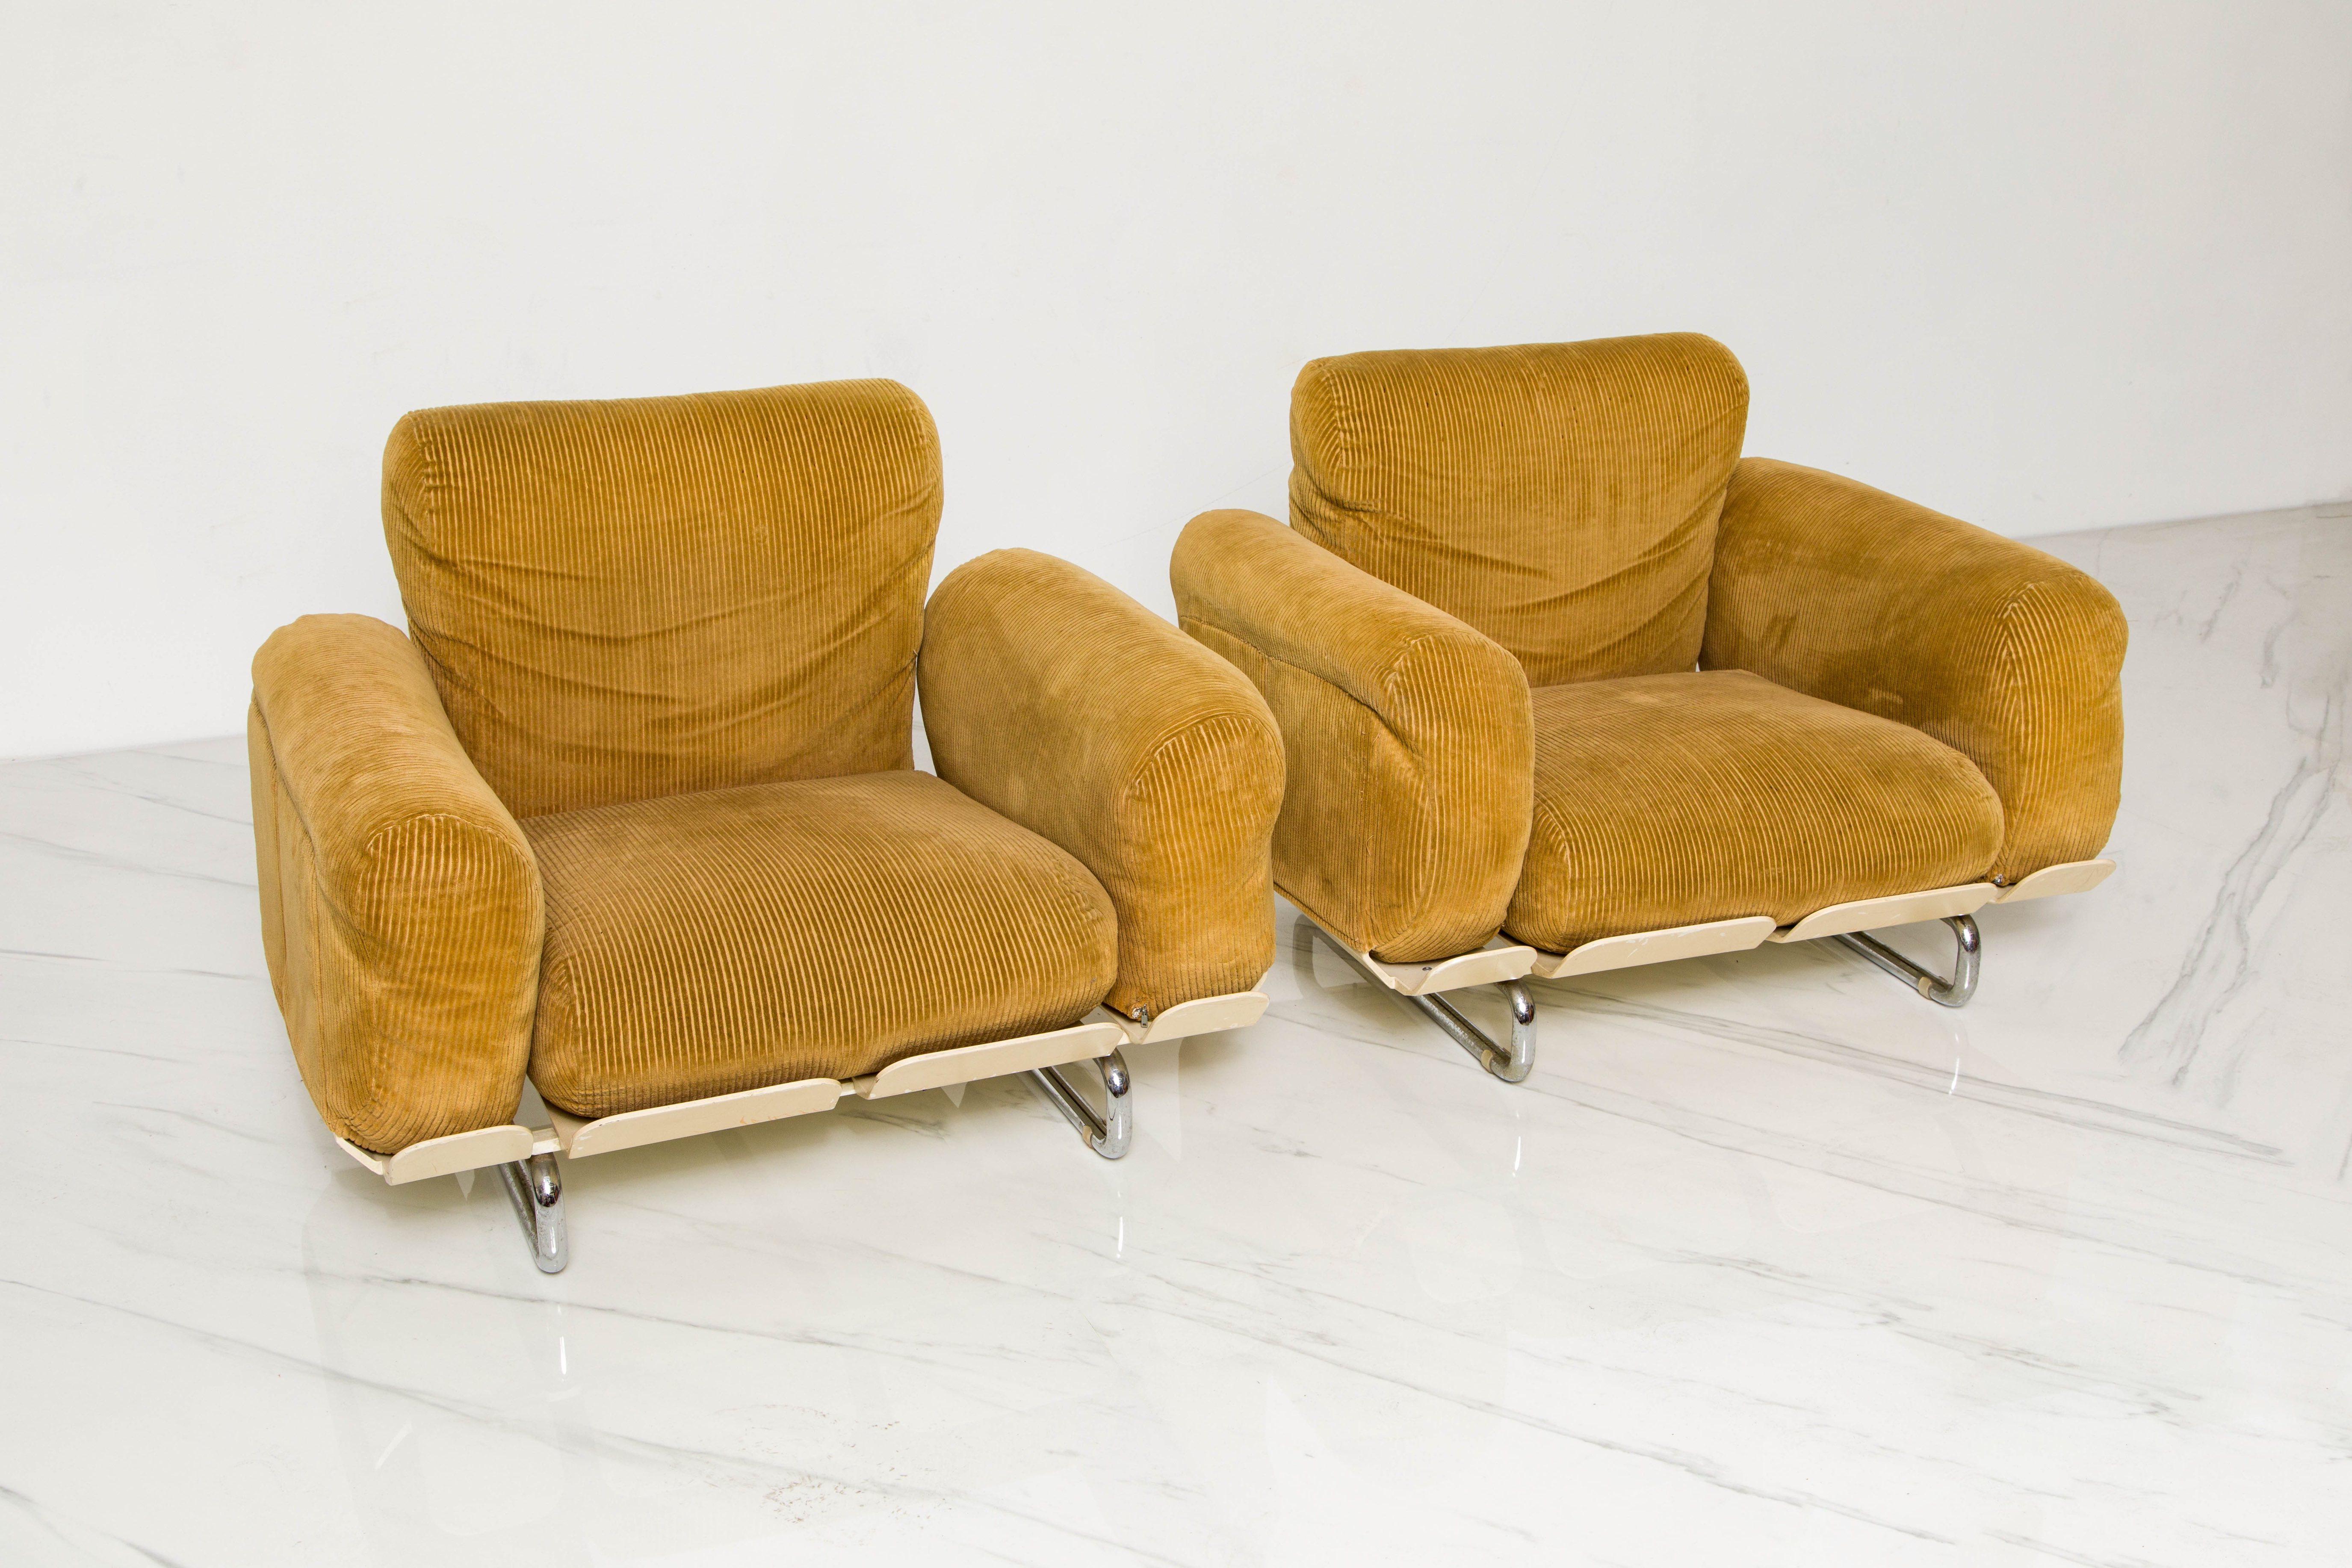 Modern Rare 'Senzafine' Lounge Chairs by Eleonore Riva for Zanotta, 1969, Signed